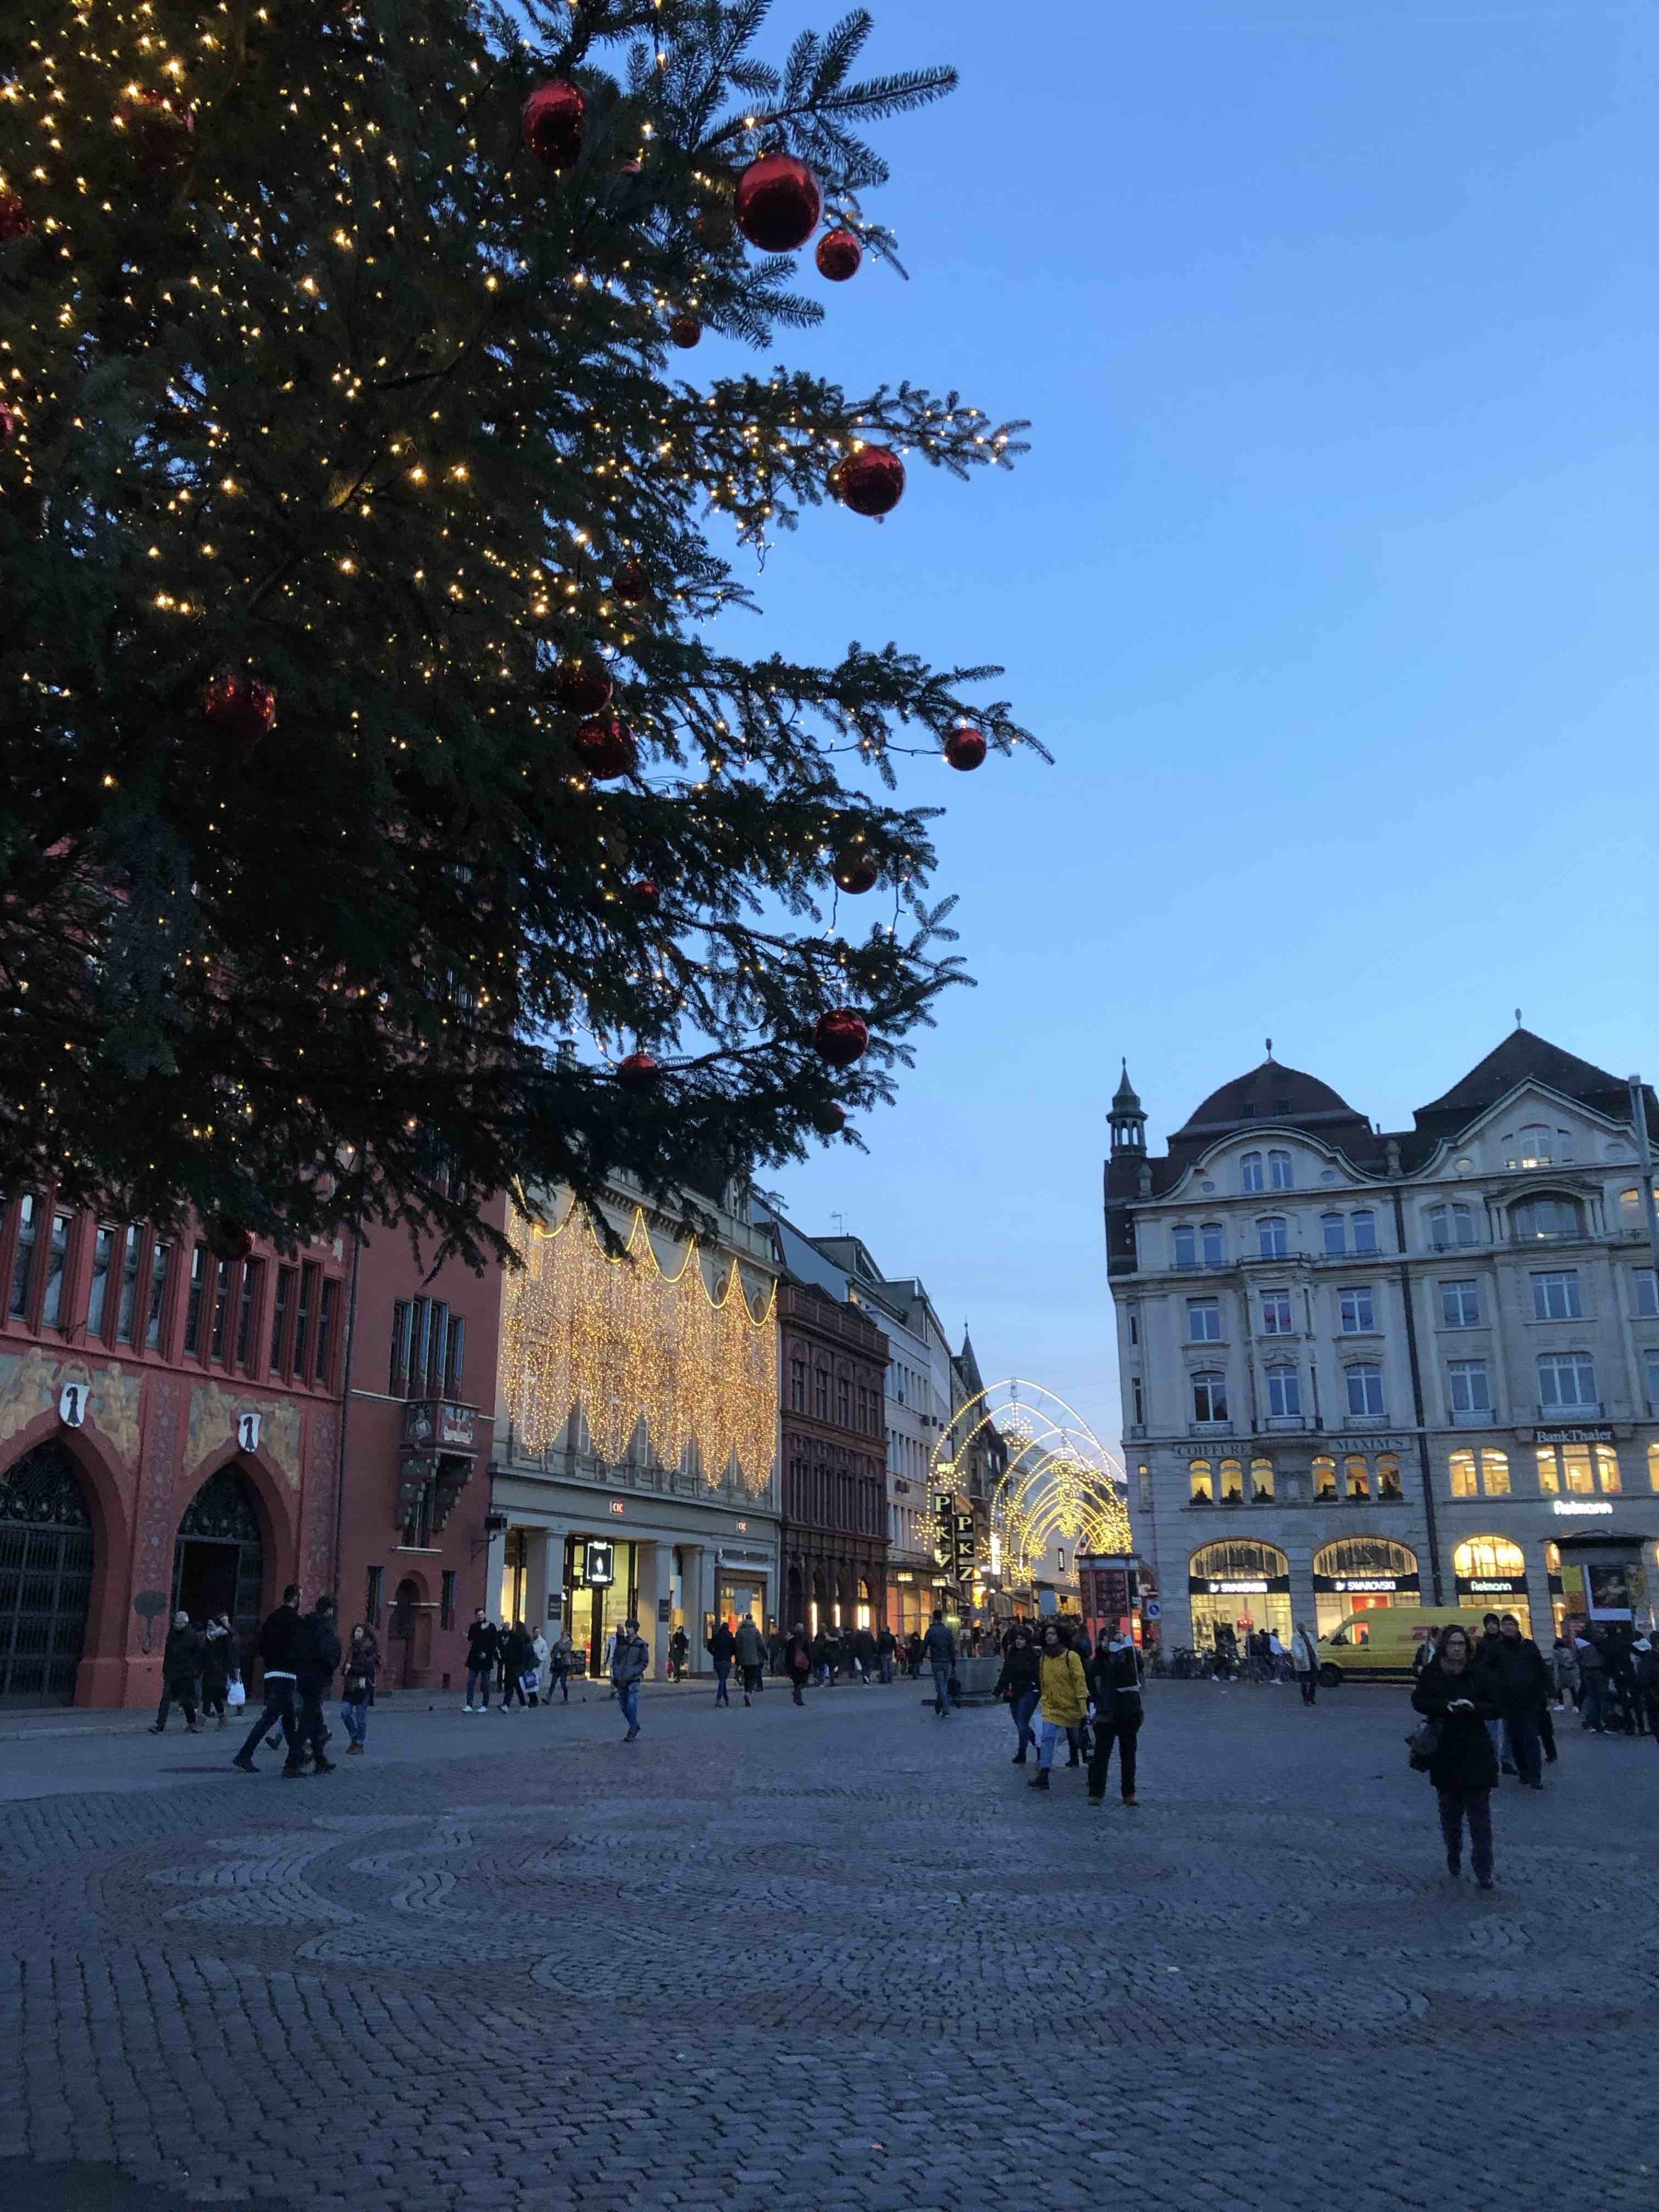 Post-Christmas time in beautifully decorated Marktplatz; Basel, Switzerland

#switzerland
#basel
#holidays